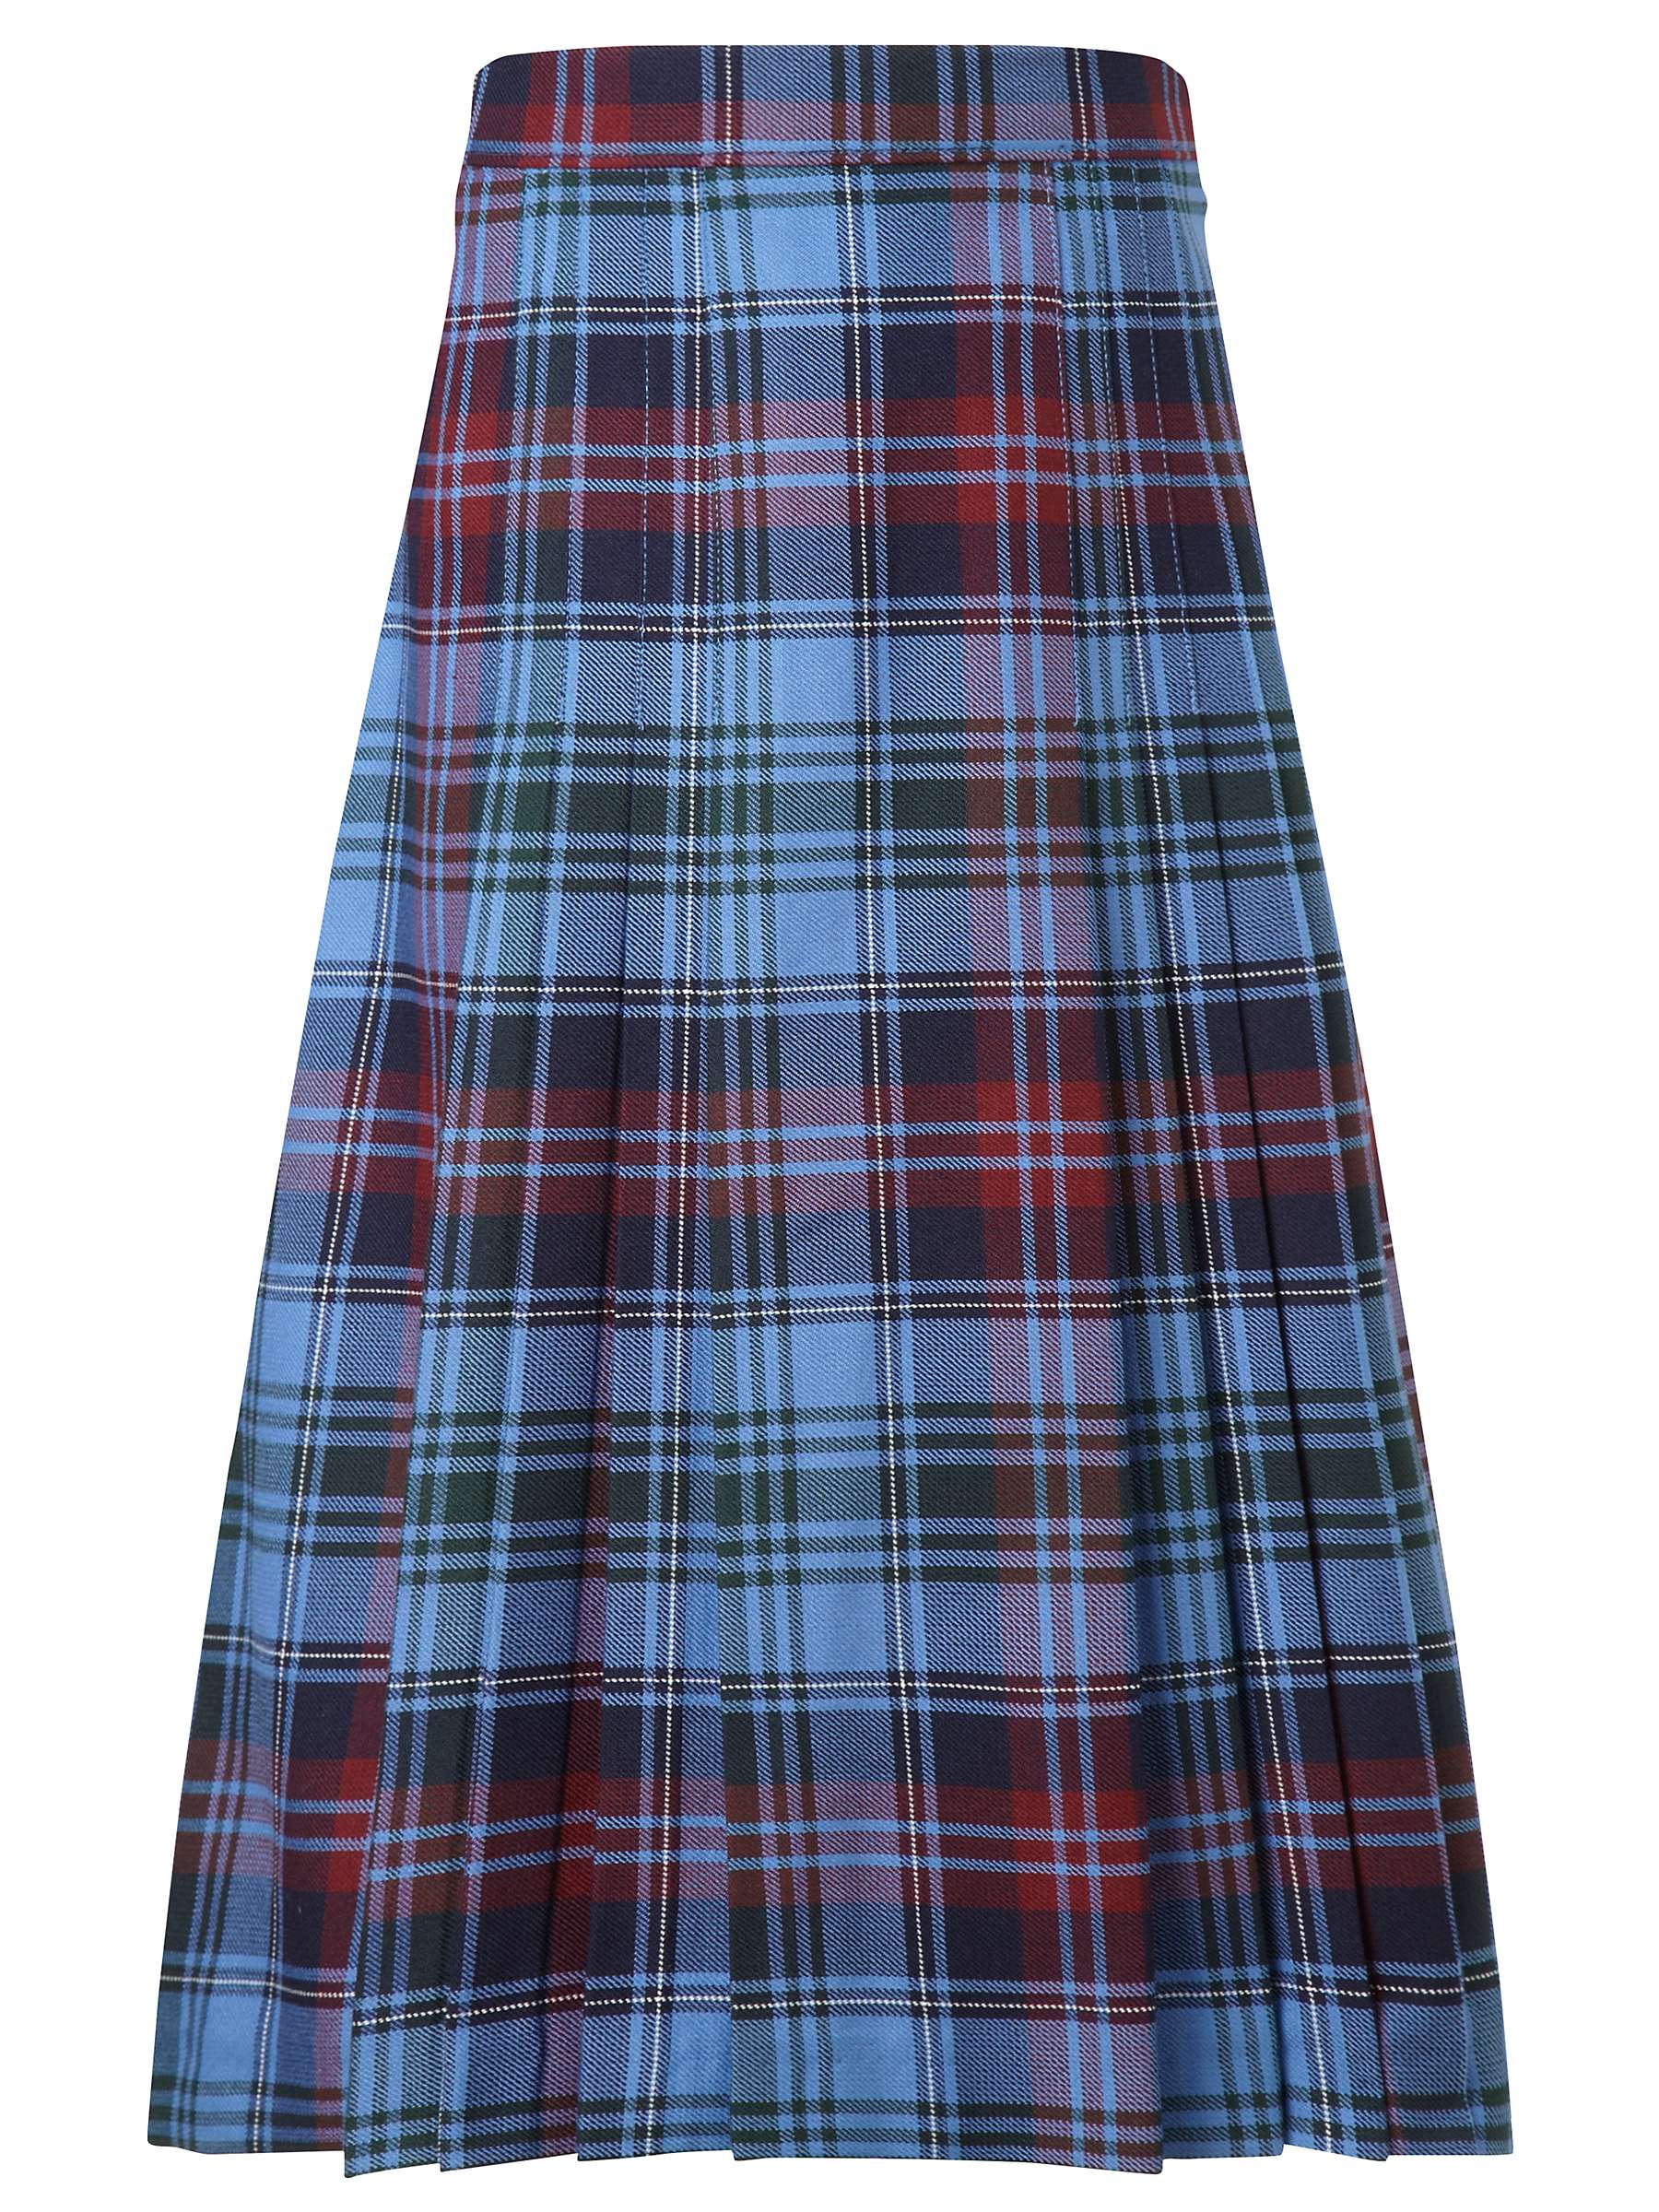 Buy Howell's School Girls' Tartan Pleat Skirt, Blue/Multi Online at johnlewis.com